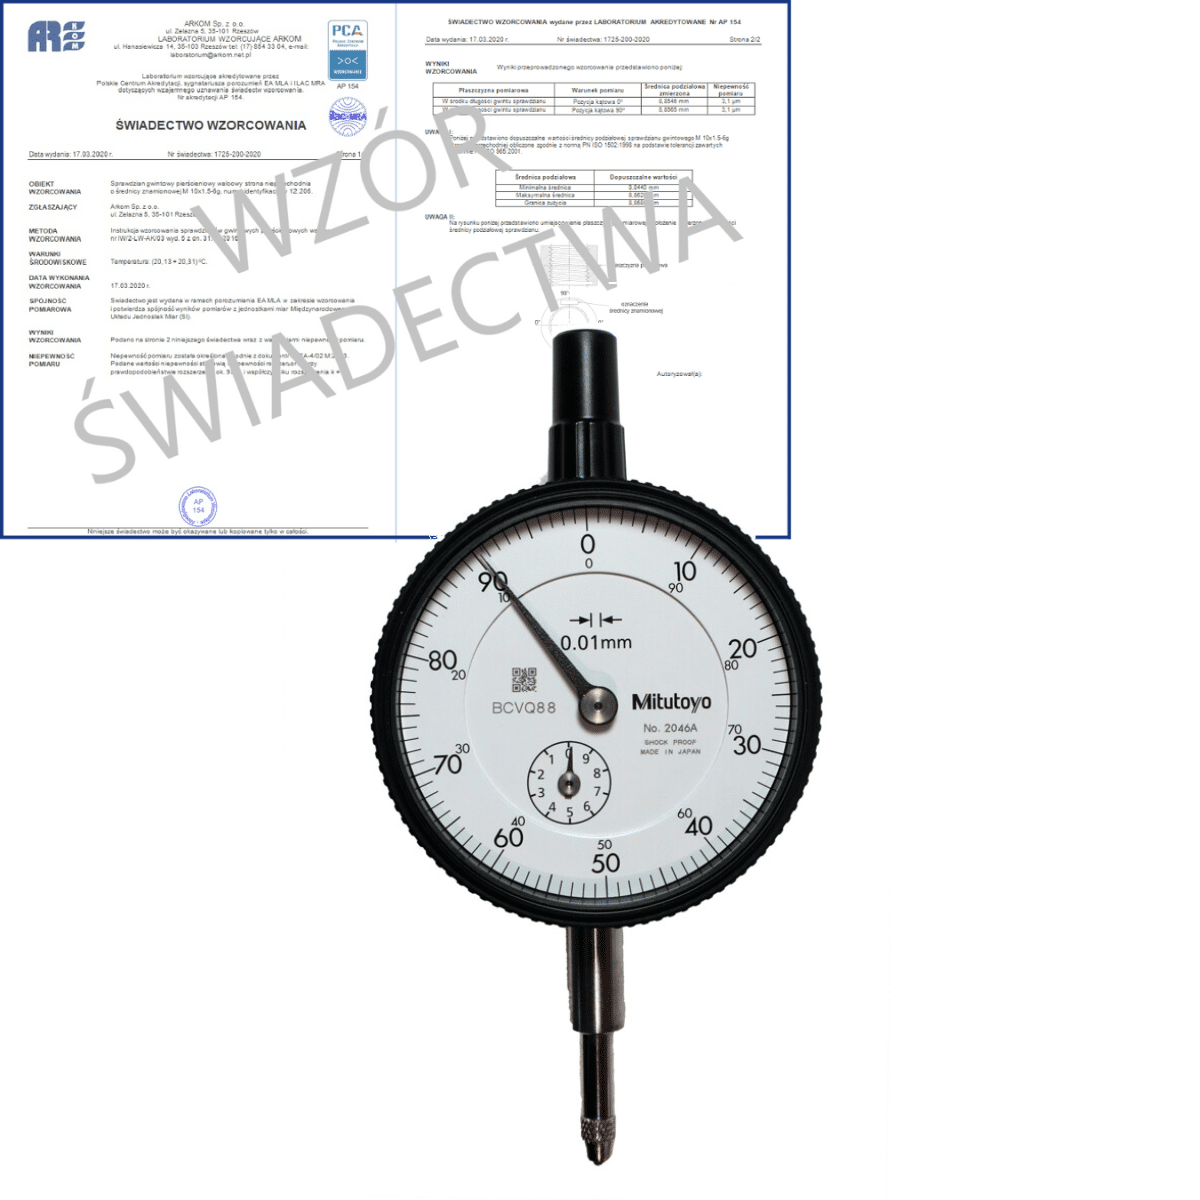 MITUTOYO czujnik zegarowy 10/0,01 mm 2046AB + świadectwo wzorcowania PCA 2046AB WZORC